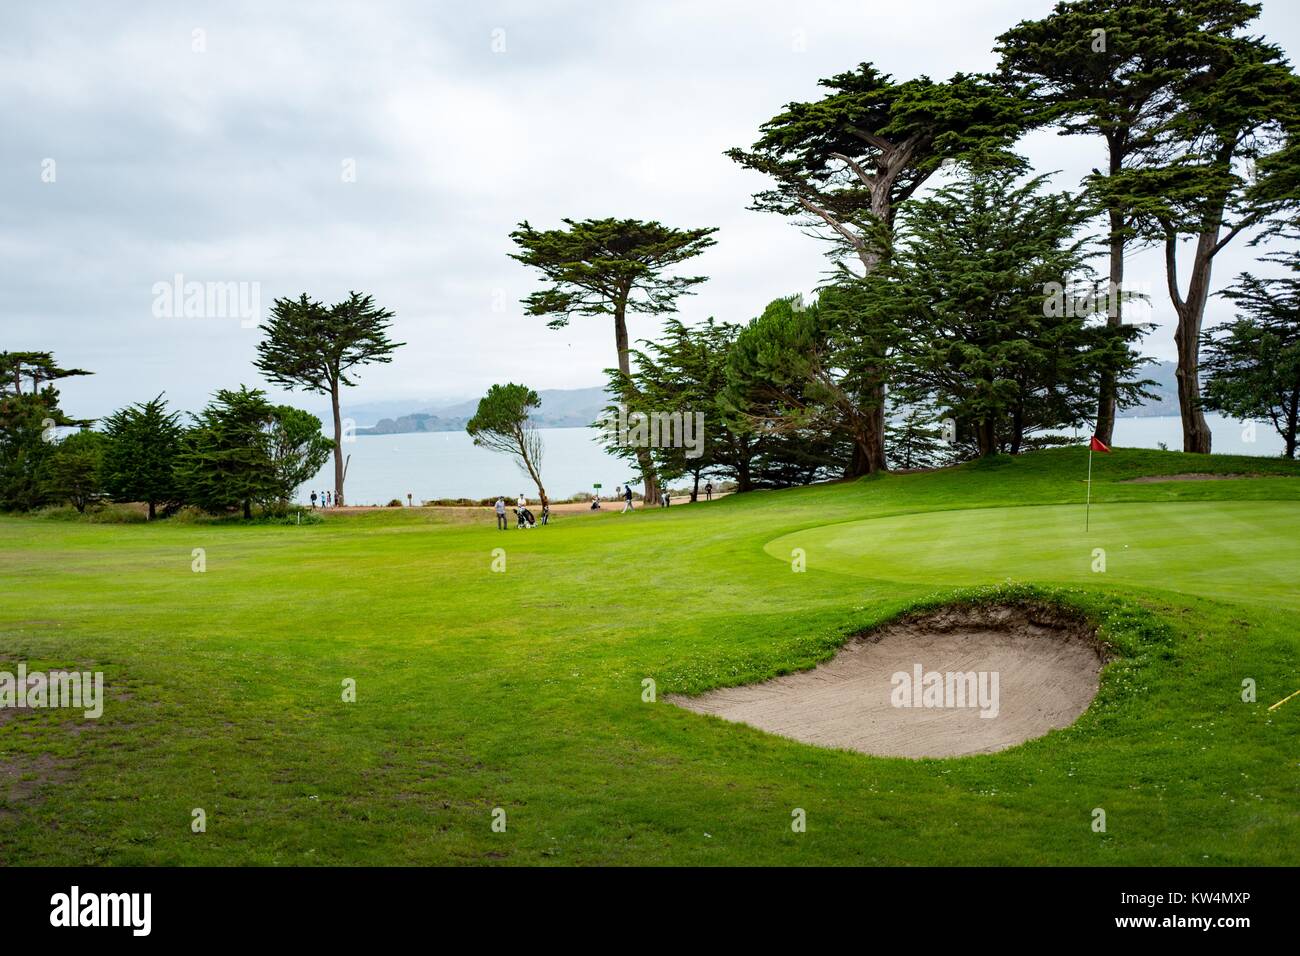 Gli amanti del golf tee su un campo da golf con vista sulla baia di San Francisco a Eagle Point in Lands End quartiere di San Francisco, California, 27 agosto 2016. Foto Stock